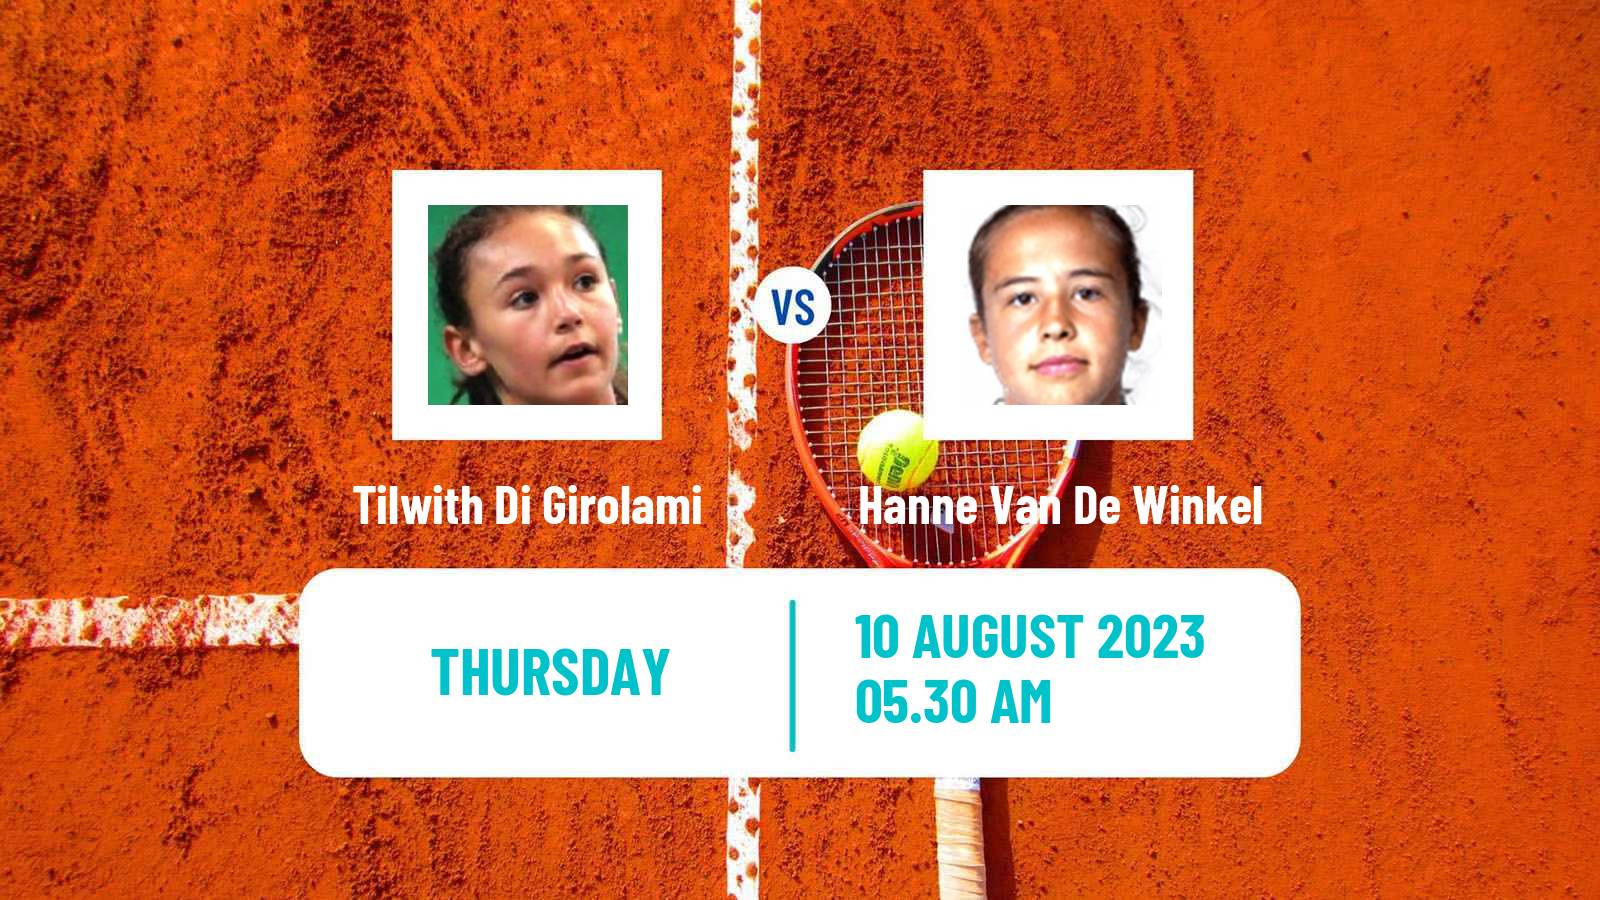 Tennis ITF W25 Koksijde Women Tilwith Di Girolami - Hanne Van De Winkel